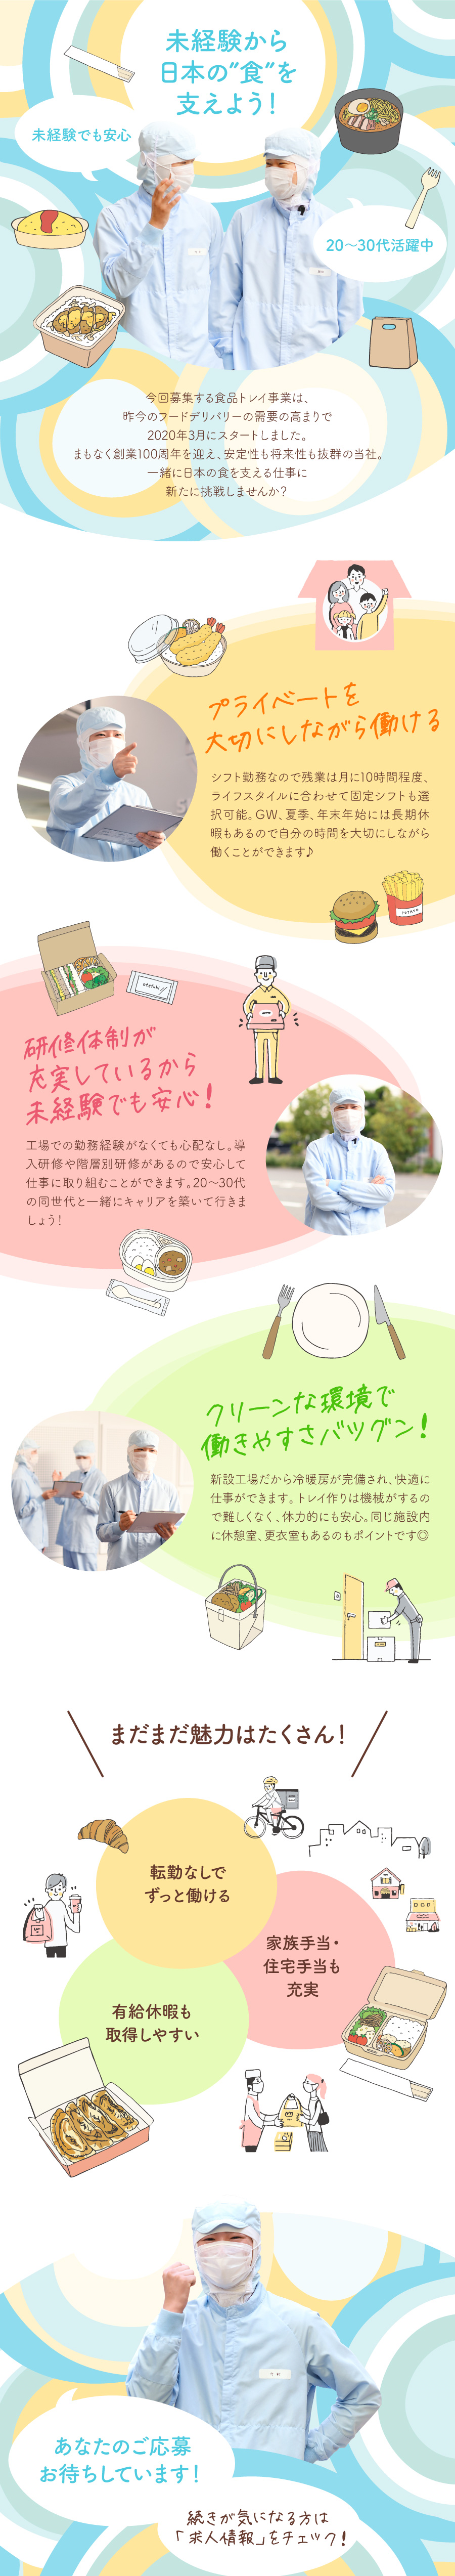 下田工業茨木株式会社からのメッセージ